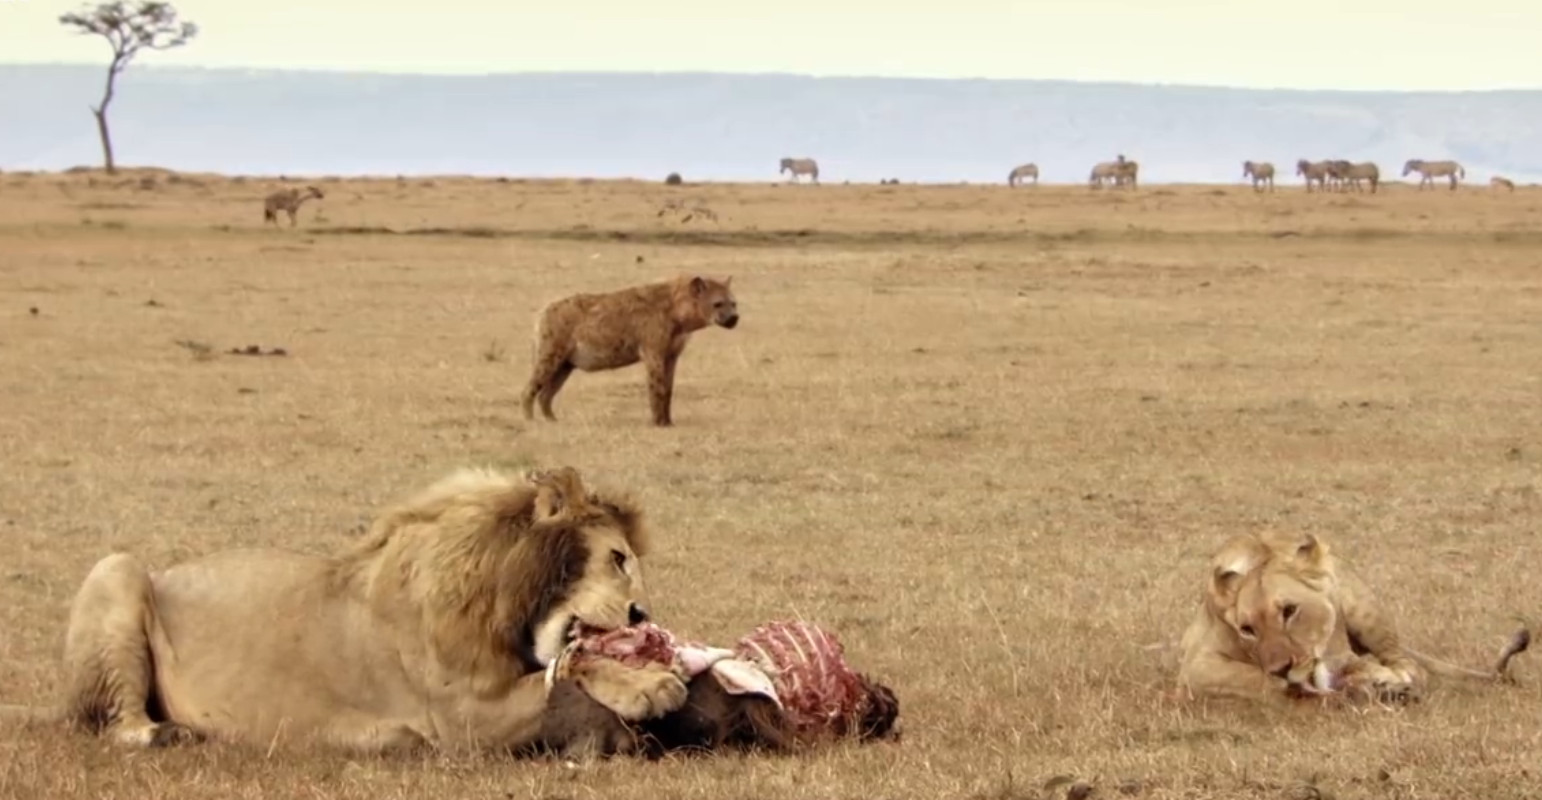 Für die Hyänen lohnt es sich oft, das Ende der Löwenmahlzeit abzuwarten - wenn die Löwen satt sind, lassen sie ihre oft umfangreichen Essenreste auf dem Teller.